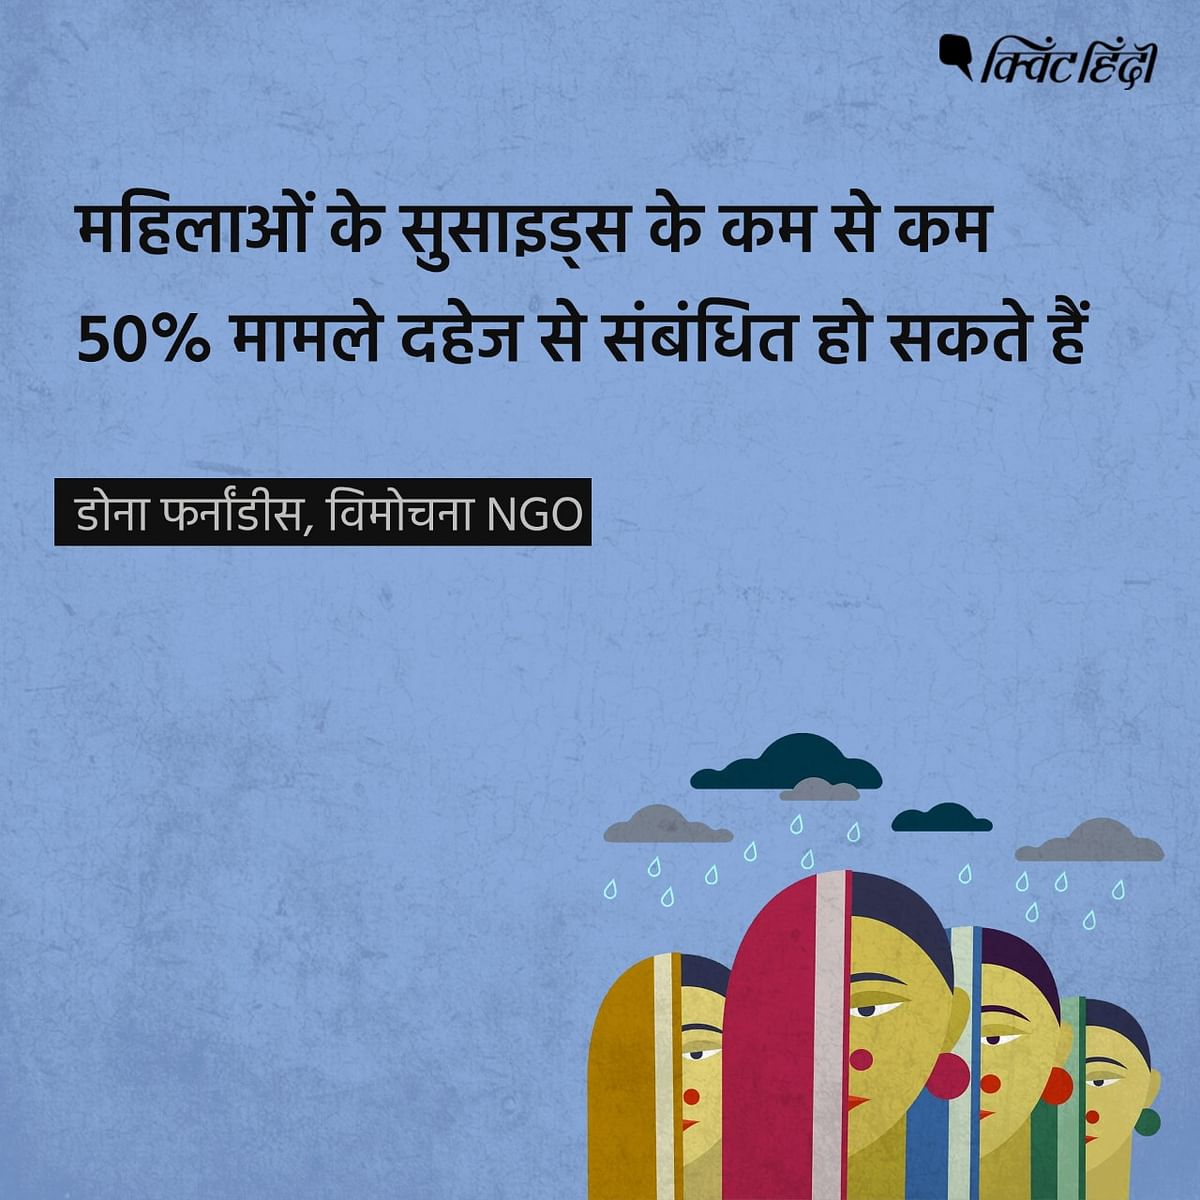 दुनियाभर में 15-39 साल के बीच की जितनी औरतों की मौत सुसाइड से होती है, उनमें से 40% भारतीय हैं